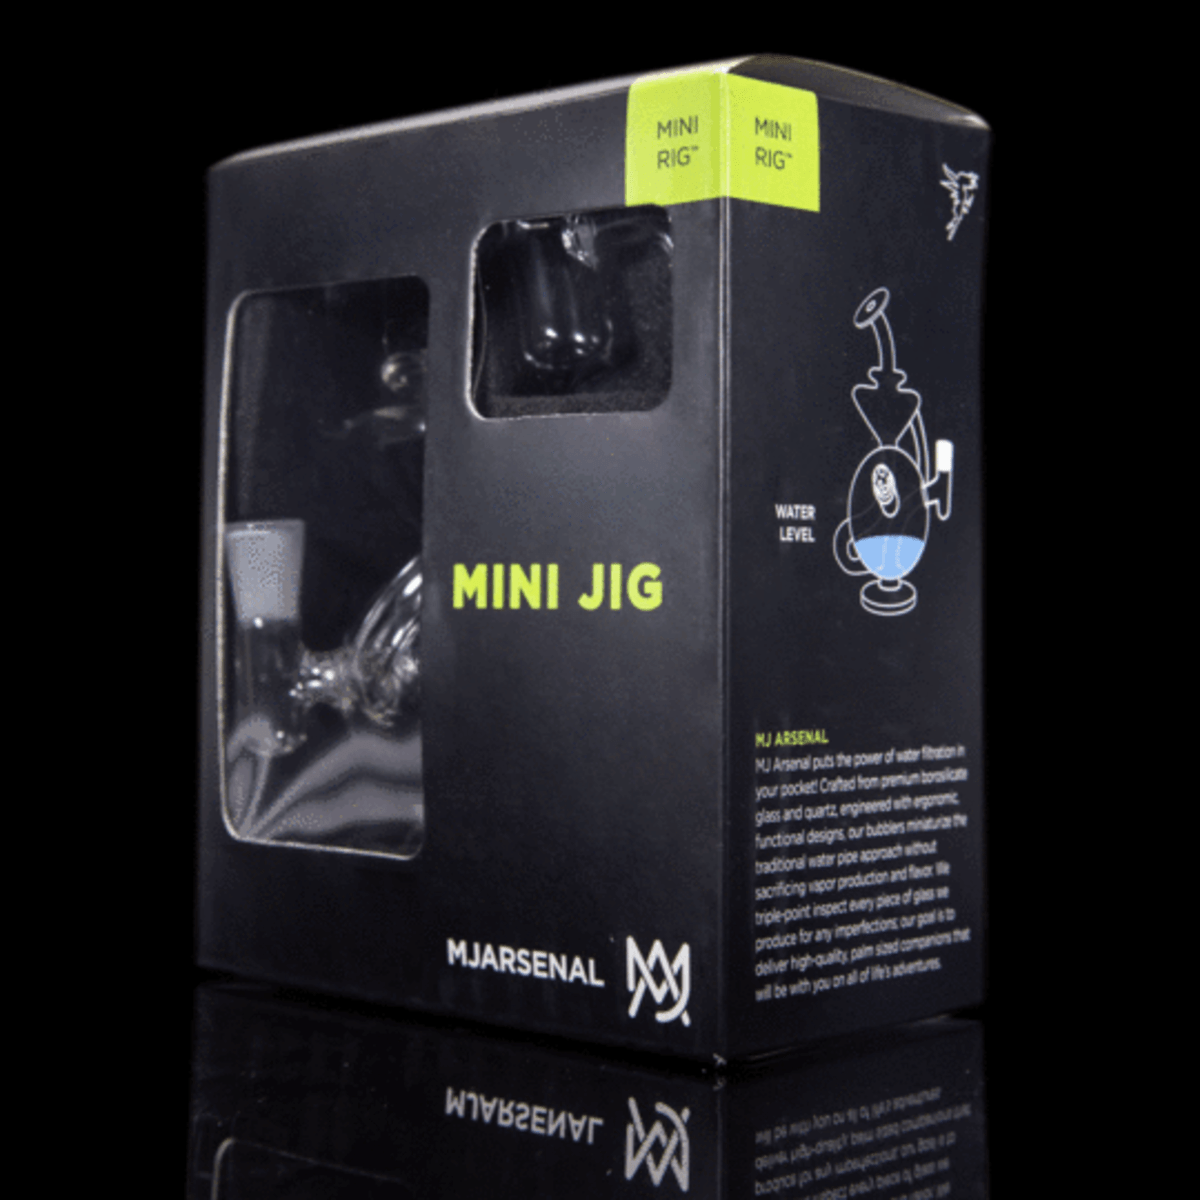 MJ Arsenal Glass MJ Arsenal "Mini Jig" Dab Rig